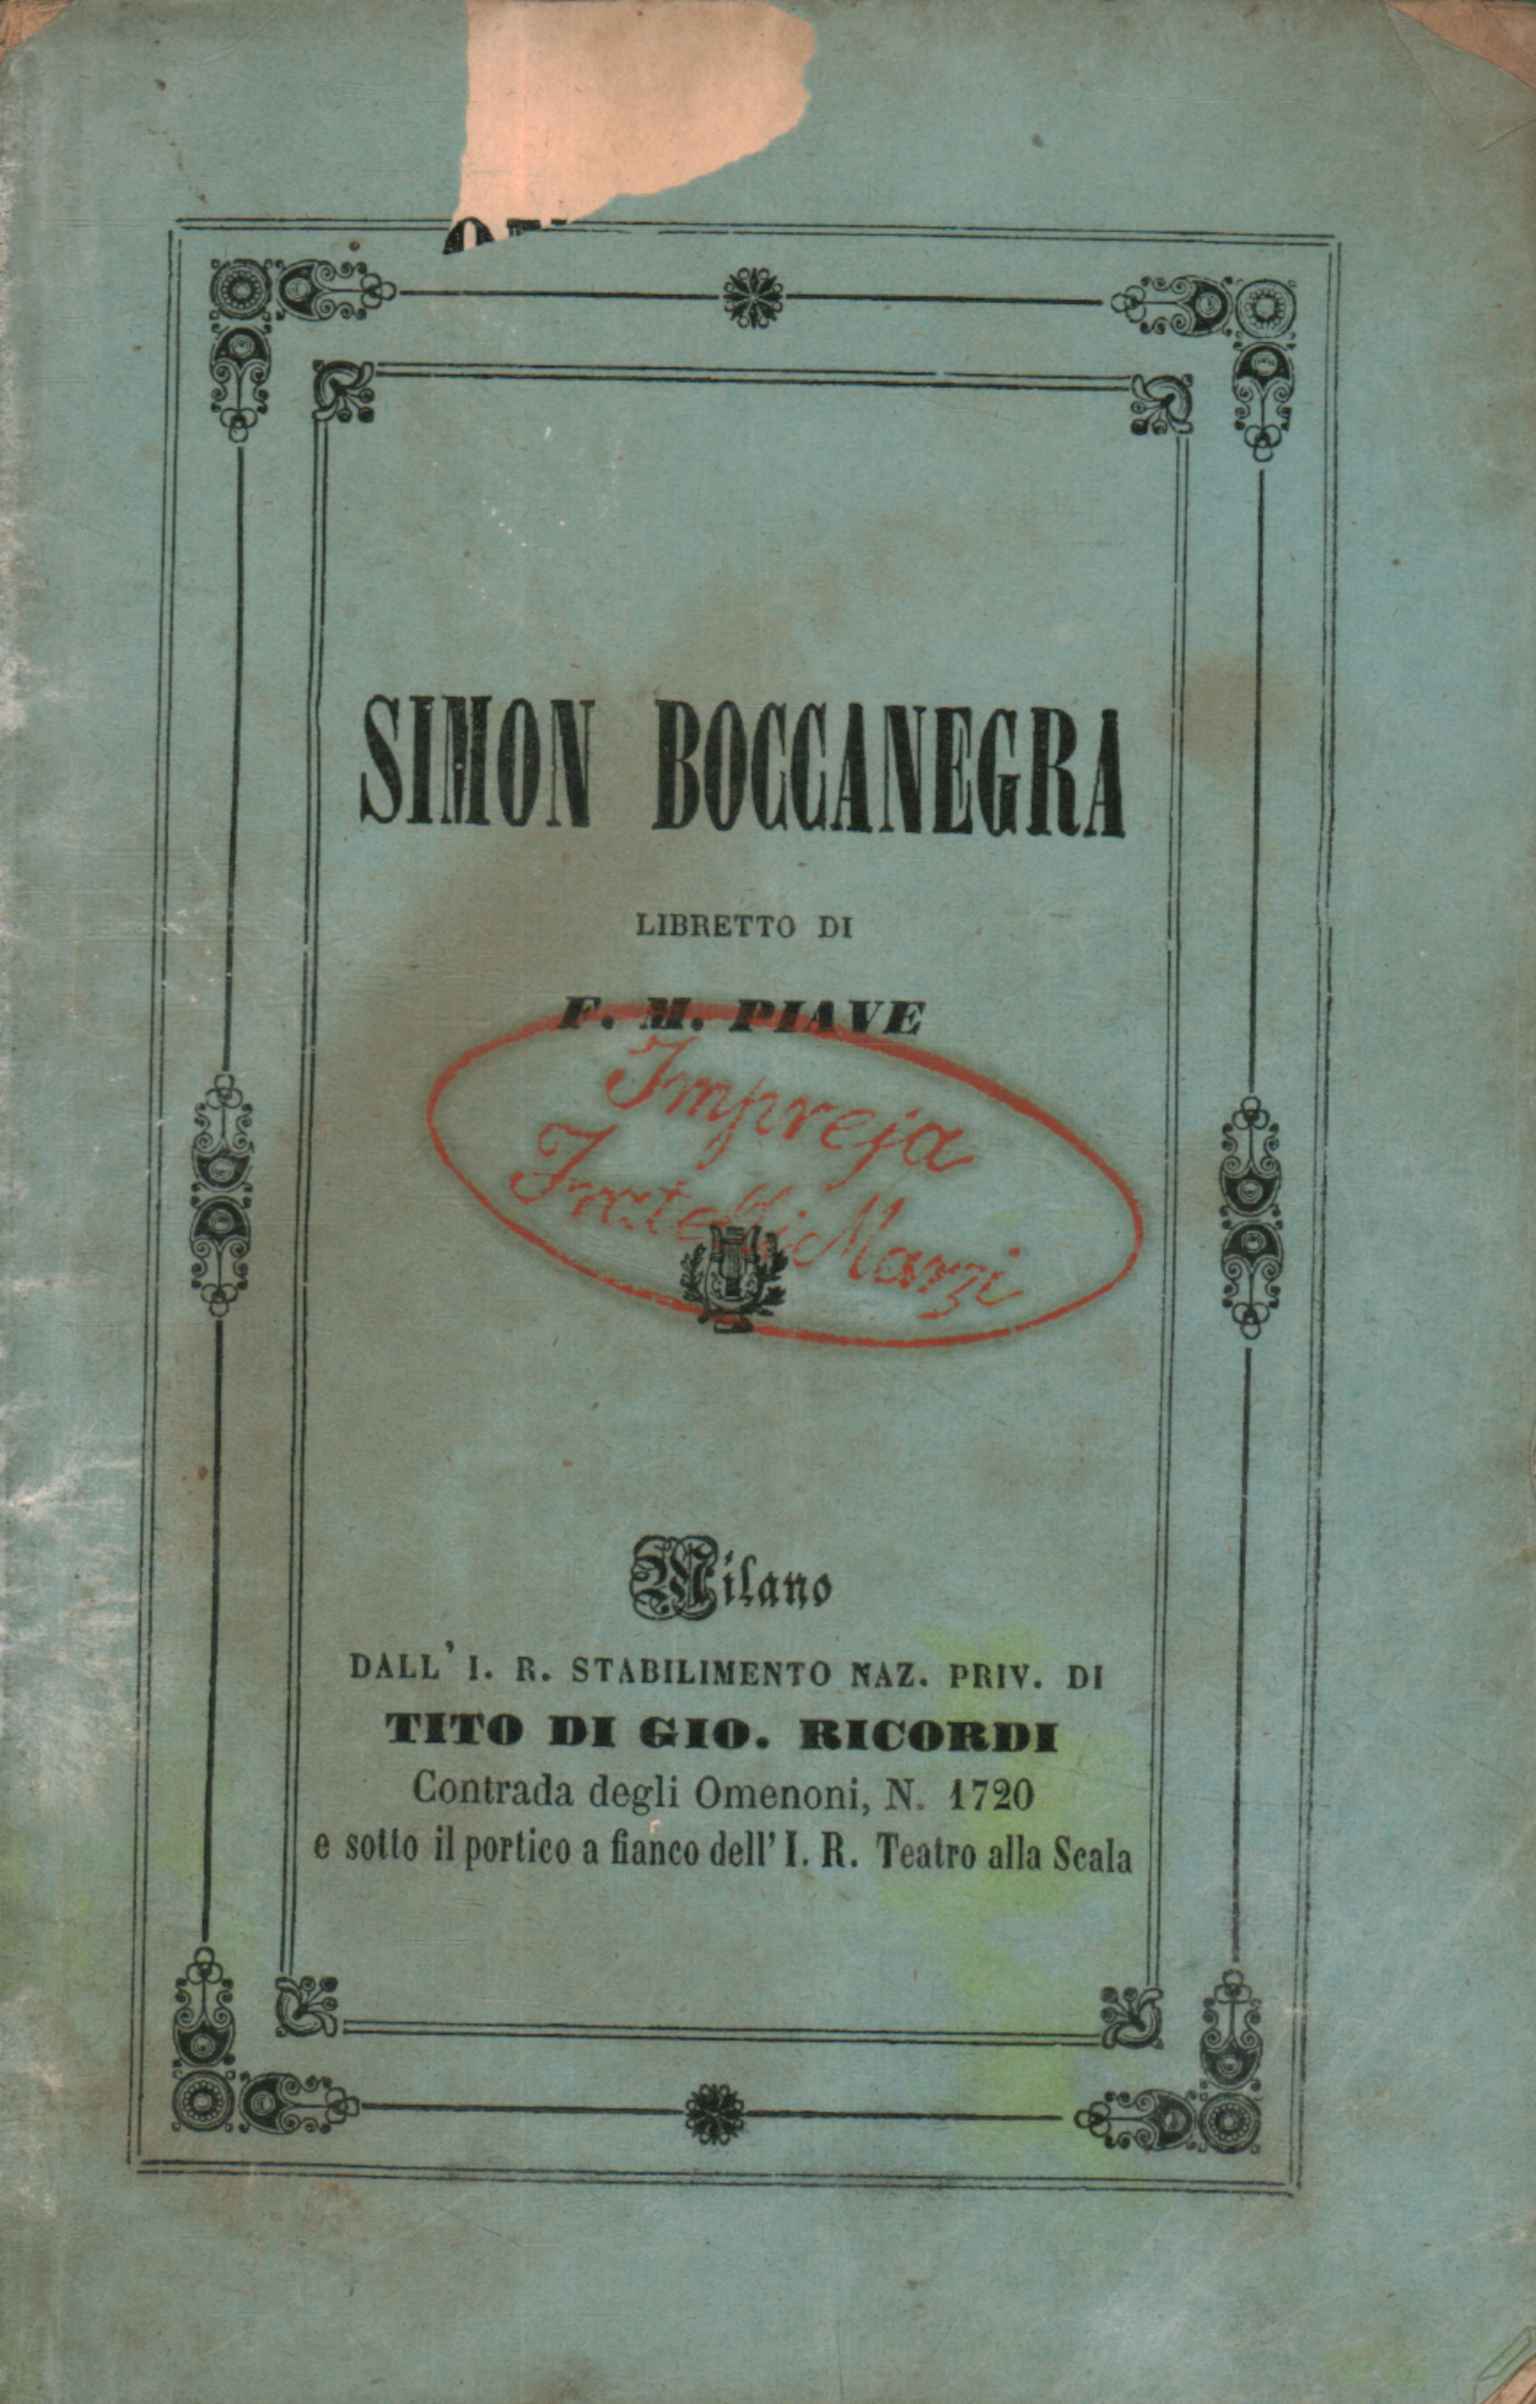 Libreto de Simon Boccanegra en un prólogo%,Libreto de Simon Boccanegra en un prólogo%,Libreto de Simon Boccanegra en un prólogo%,Libreto de Simon Boccanegra en un prólogo%